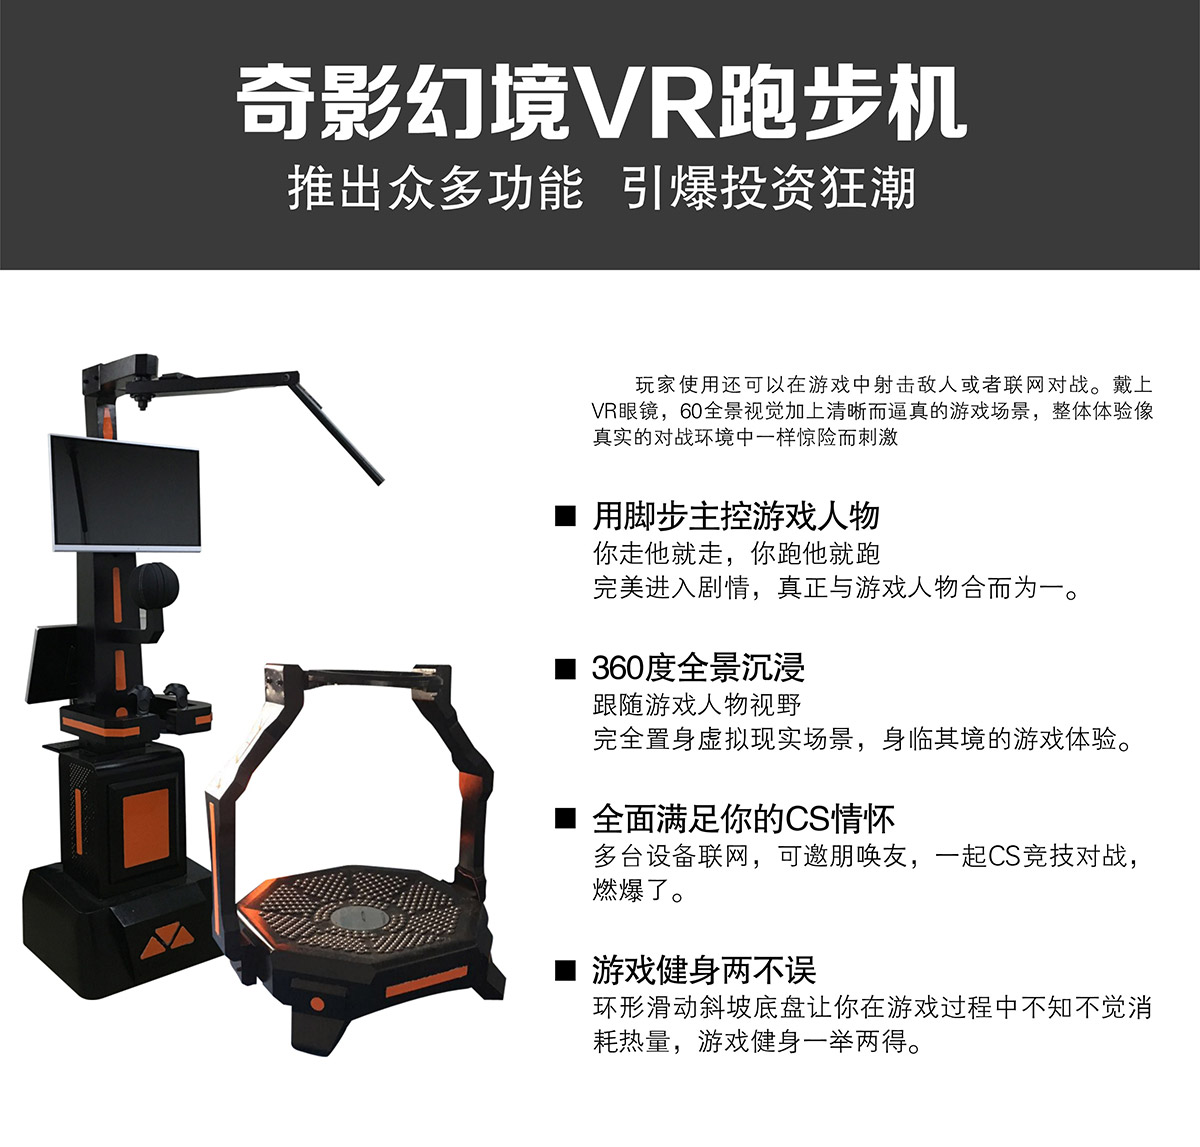 模拟安全VR跑步机独家功能.jpg